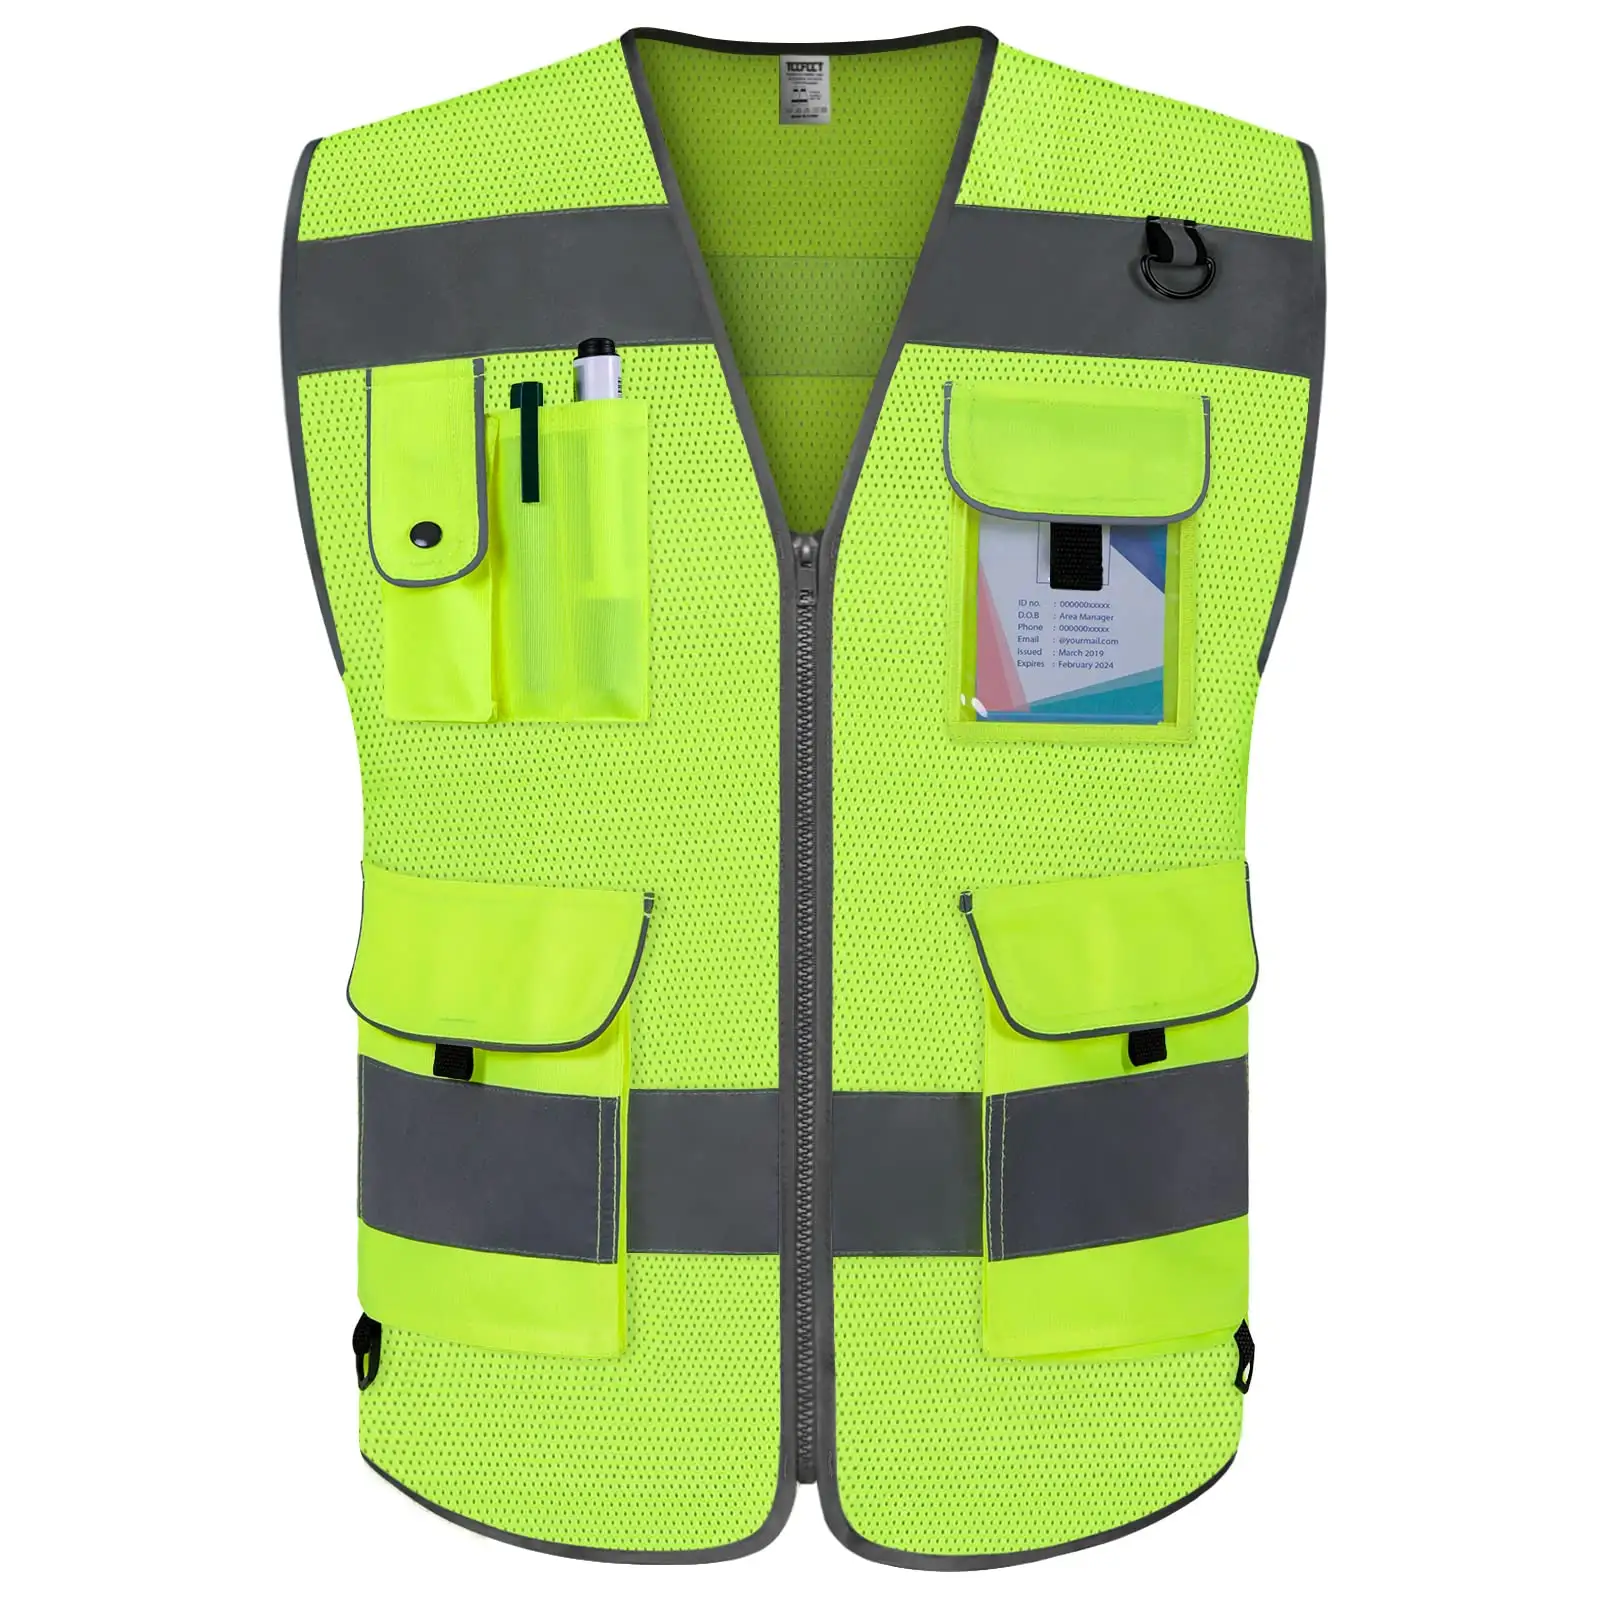 Reflektierende Weste Sicherheits weste Jacken streifen Persönliche Sicherheits konstruktion Hohe Sichtbarkeit Hi Vis Arbeits sicherheit Reflektierende Kleidung